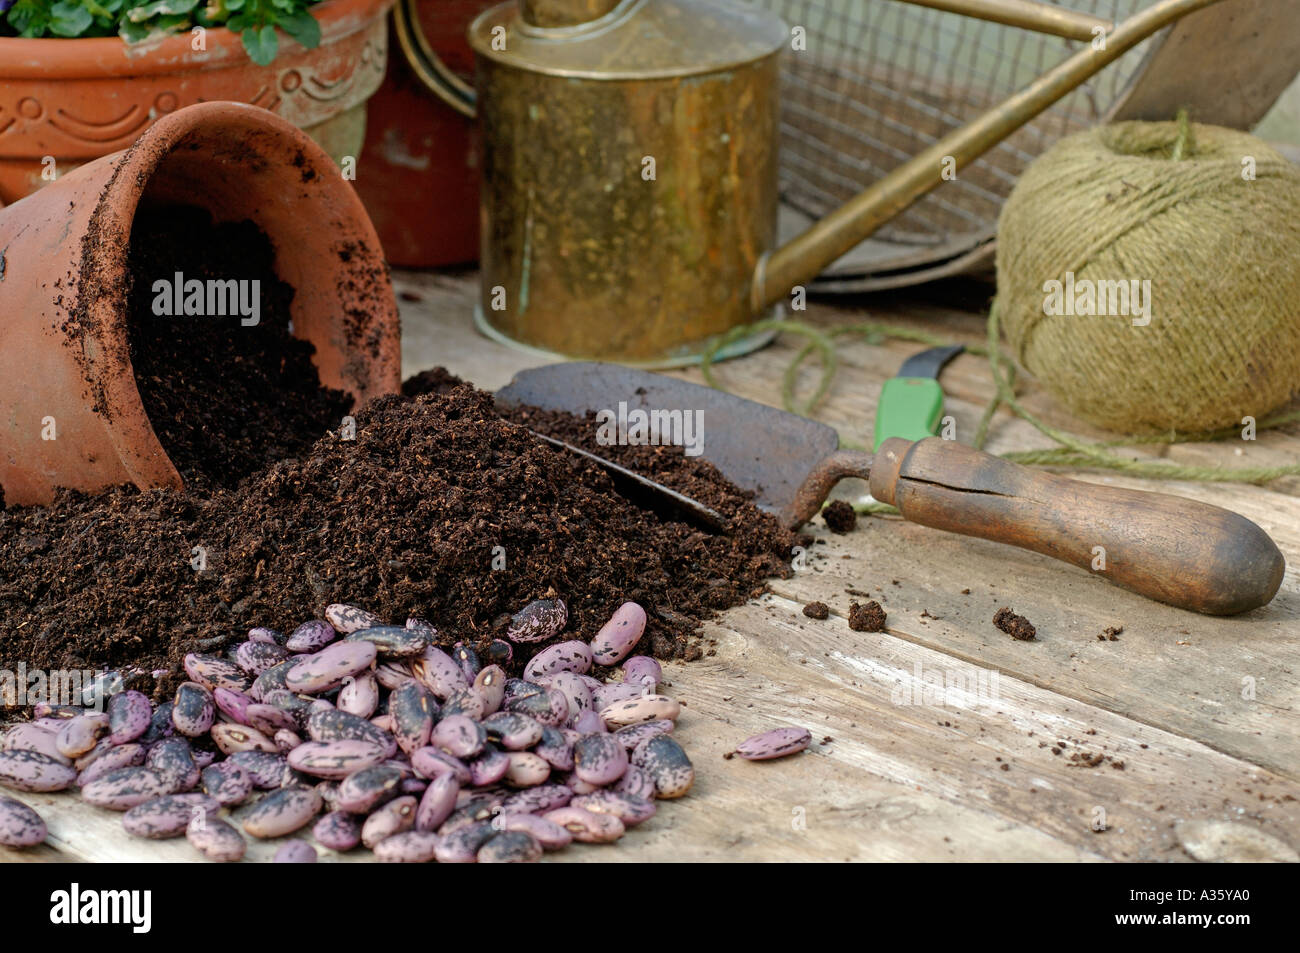 Potting Shed banco en primavera con deslizadera y sembrar semillas de frijol abono Foto de stock